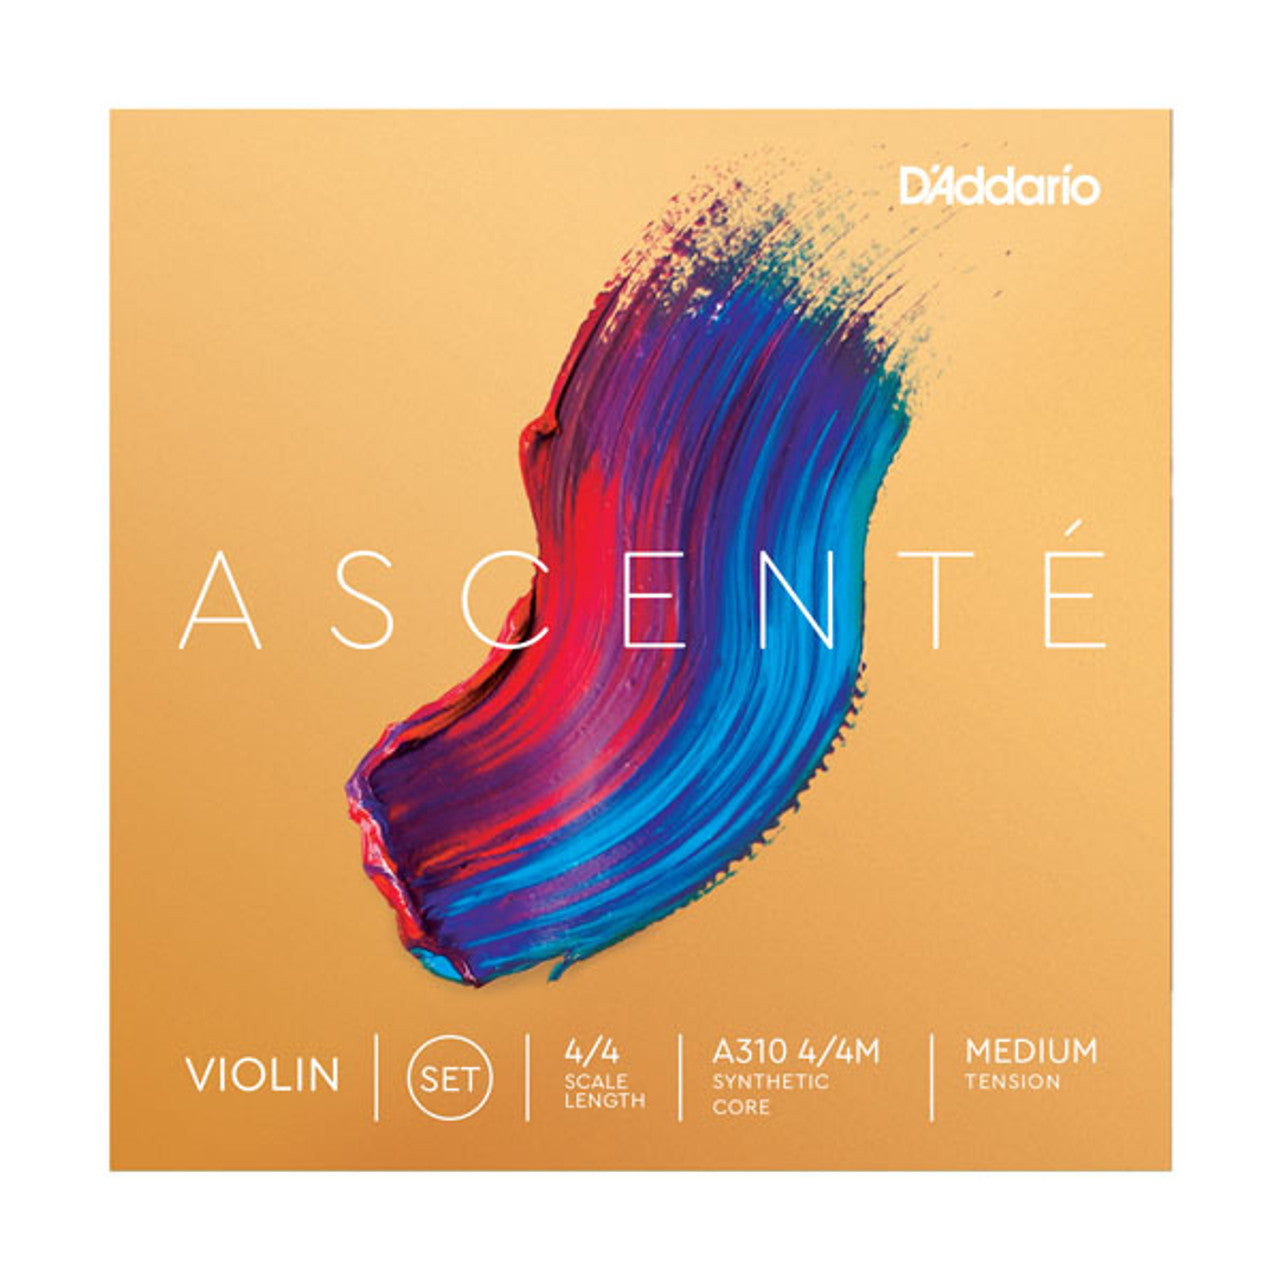 D'addario-Ascente -4-4-Violin-String Set